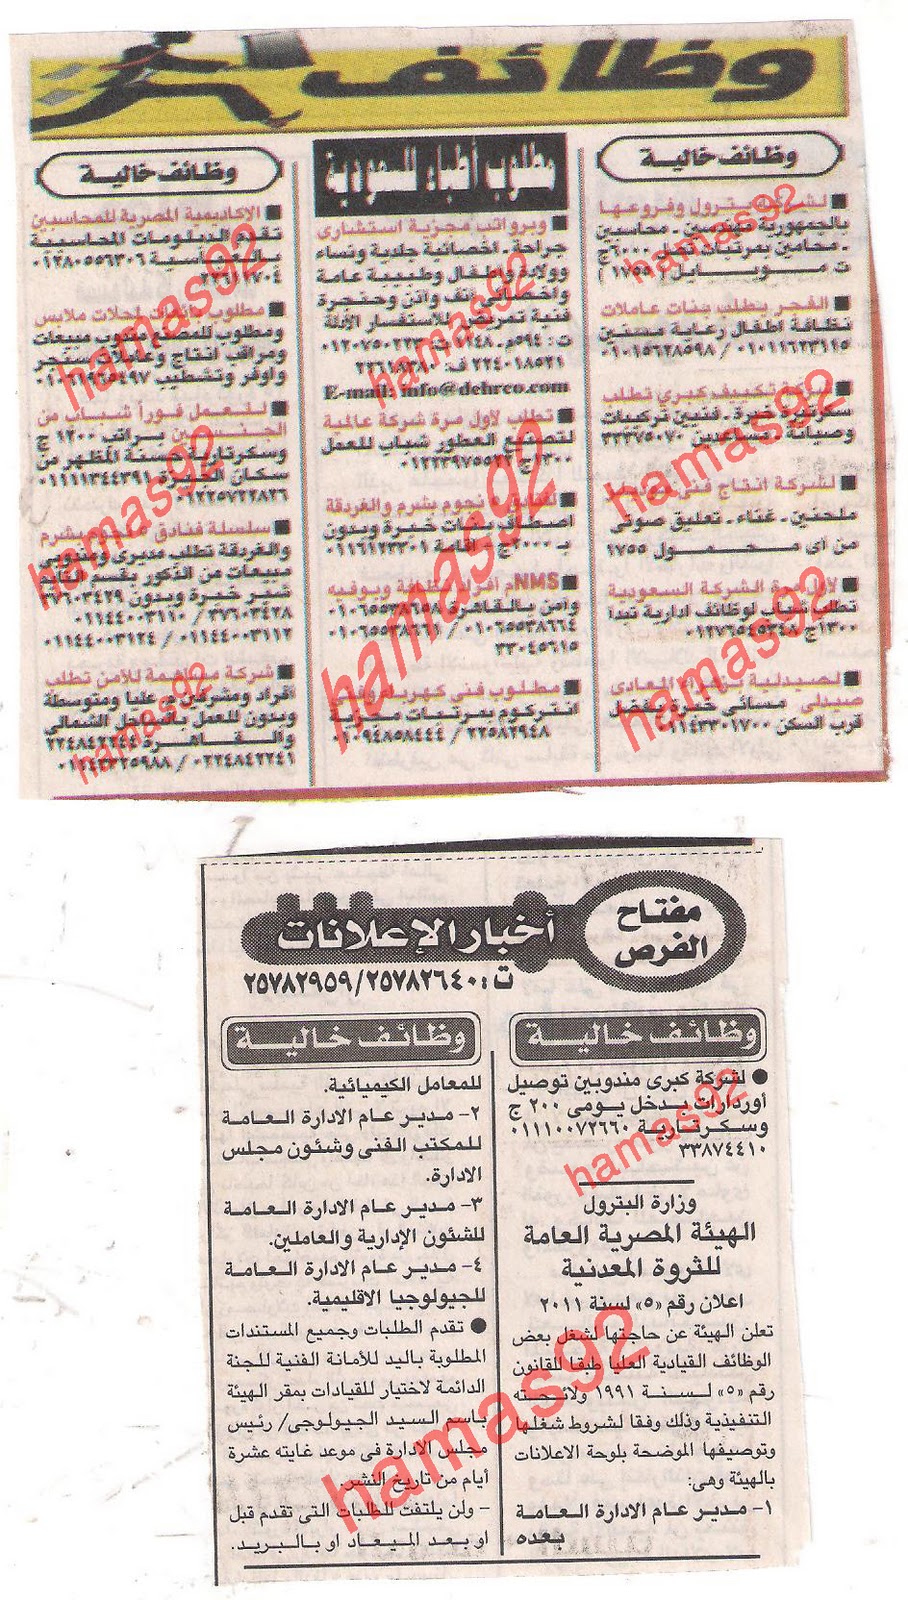 وظائف جريدة الاخبار الجمعة 16 ديسمبر 2011  Picture+018